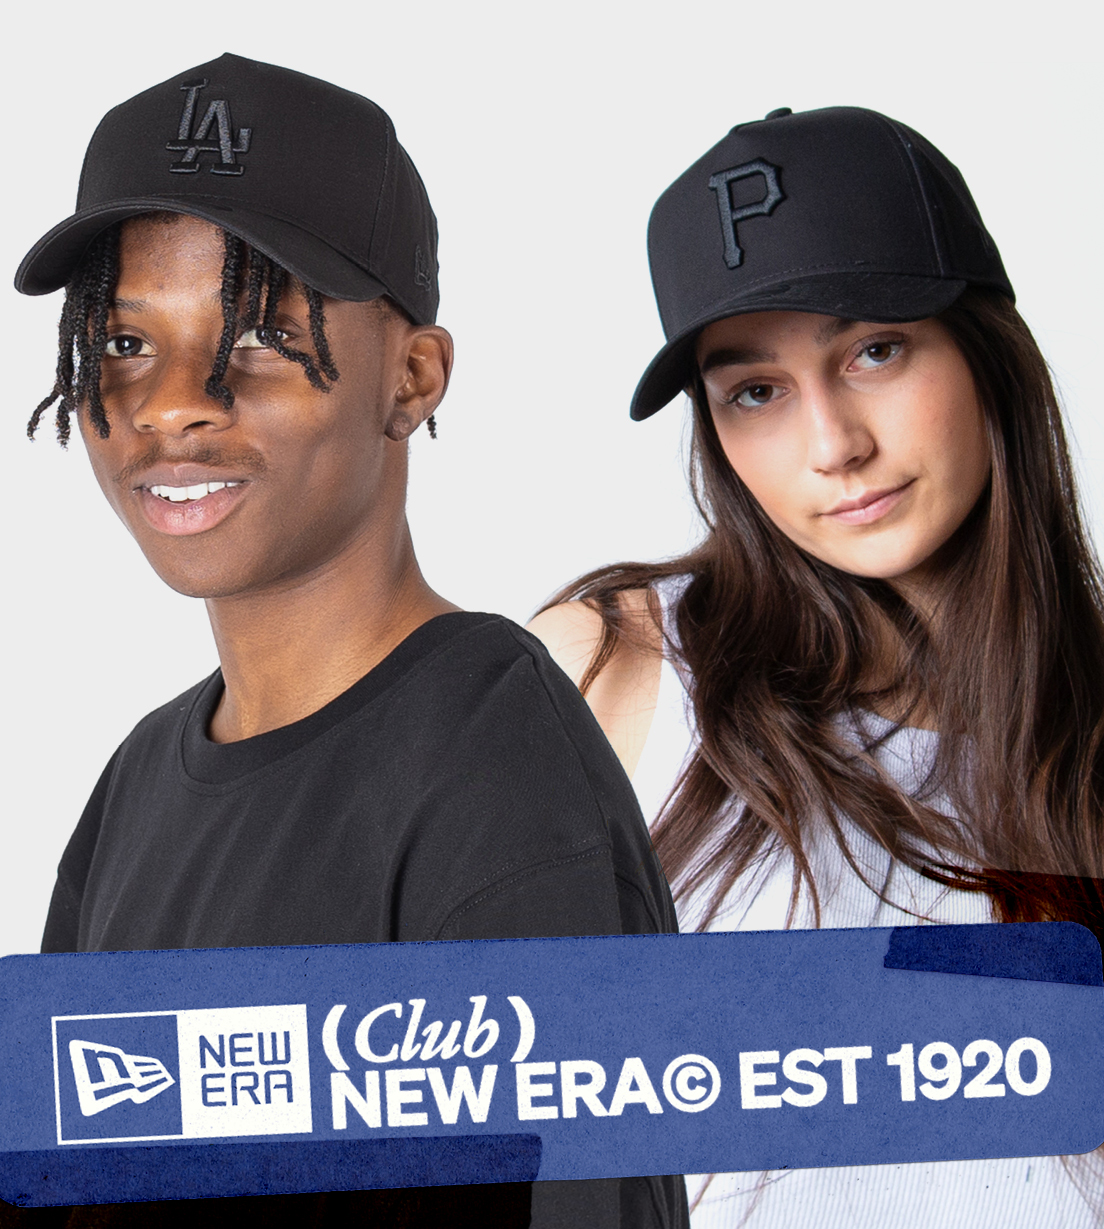 New Era caps